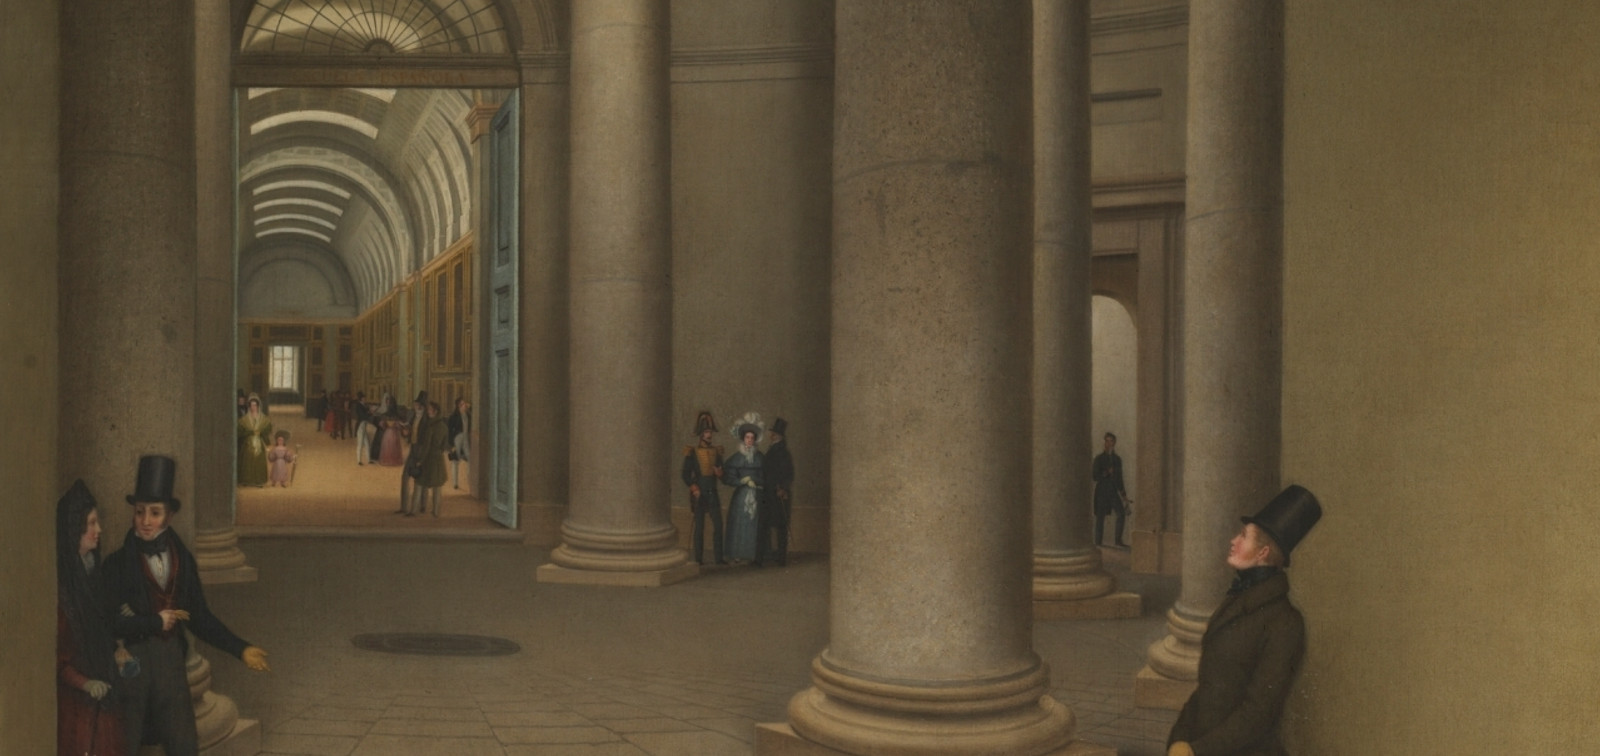 Historia del Museo del Prado y sus edificios